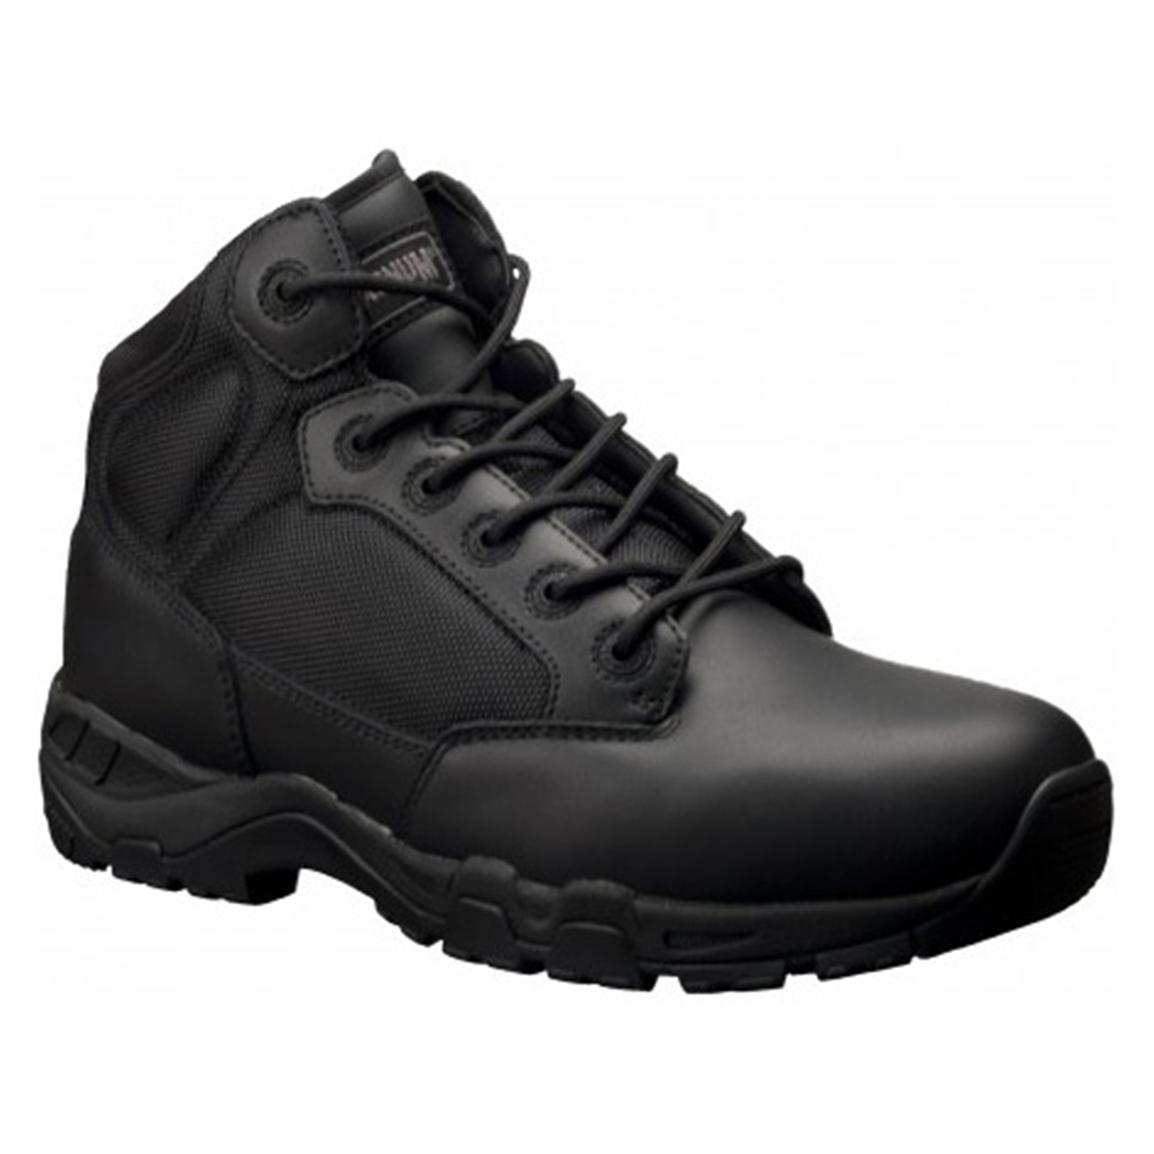 Men's MagnumÂ® Viper Pro 5.0 Waterproof Side-zip Tactical Boots, Black - 582047, Tactical Boots 